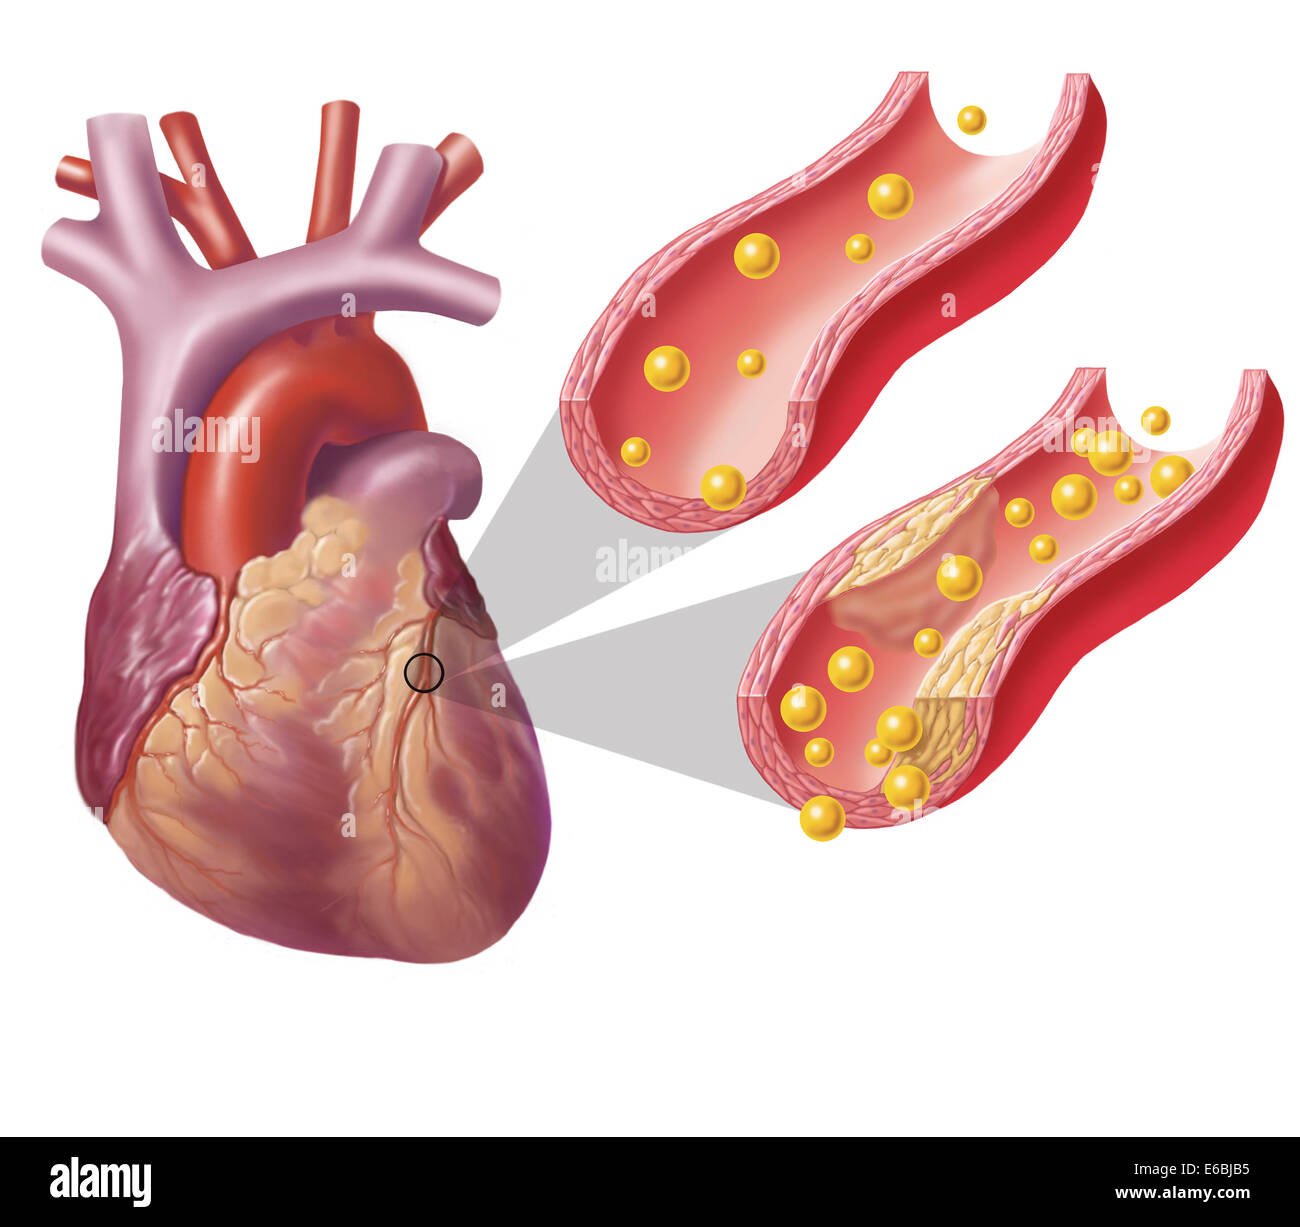 Artères cholestérol coeur avec montrant dans une artère et plaque athérosclérotique dans l'autre. Banque D'Images